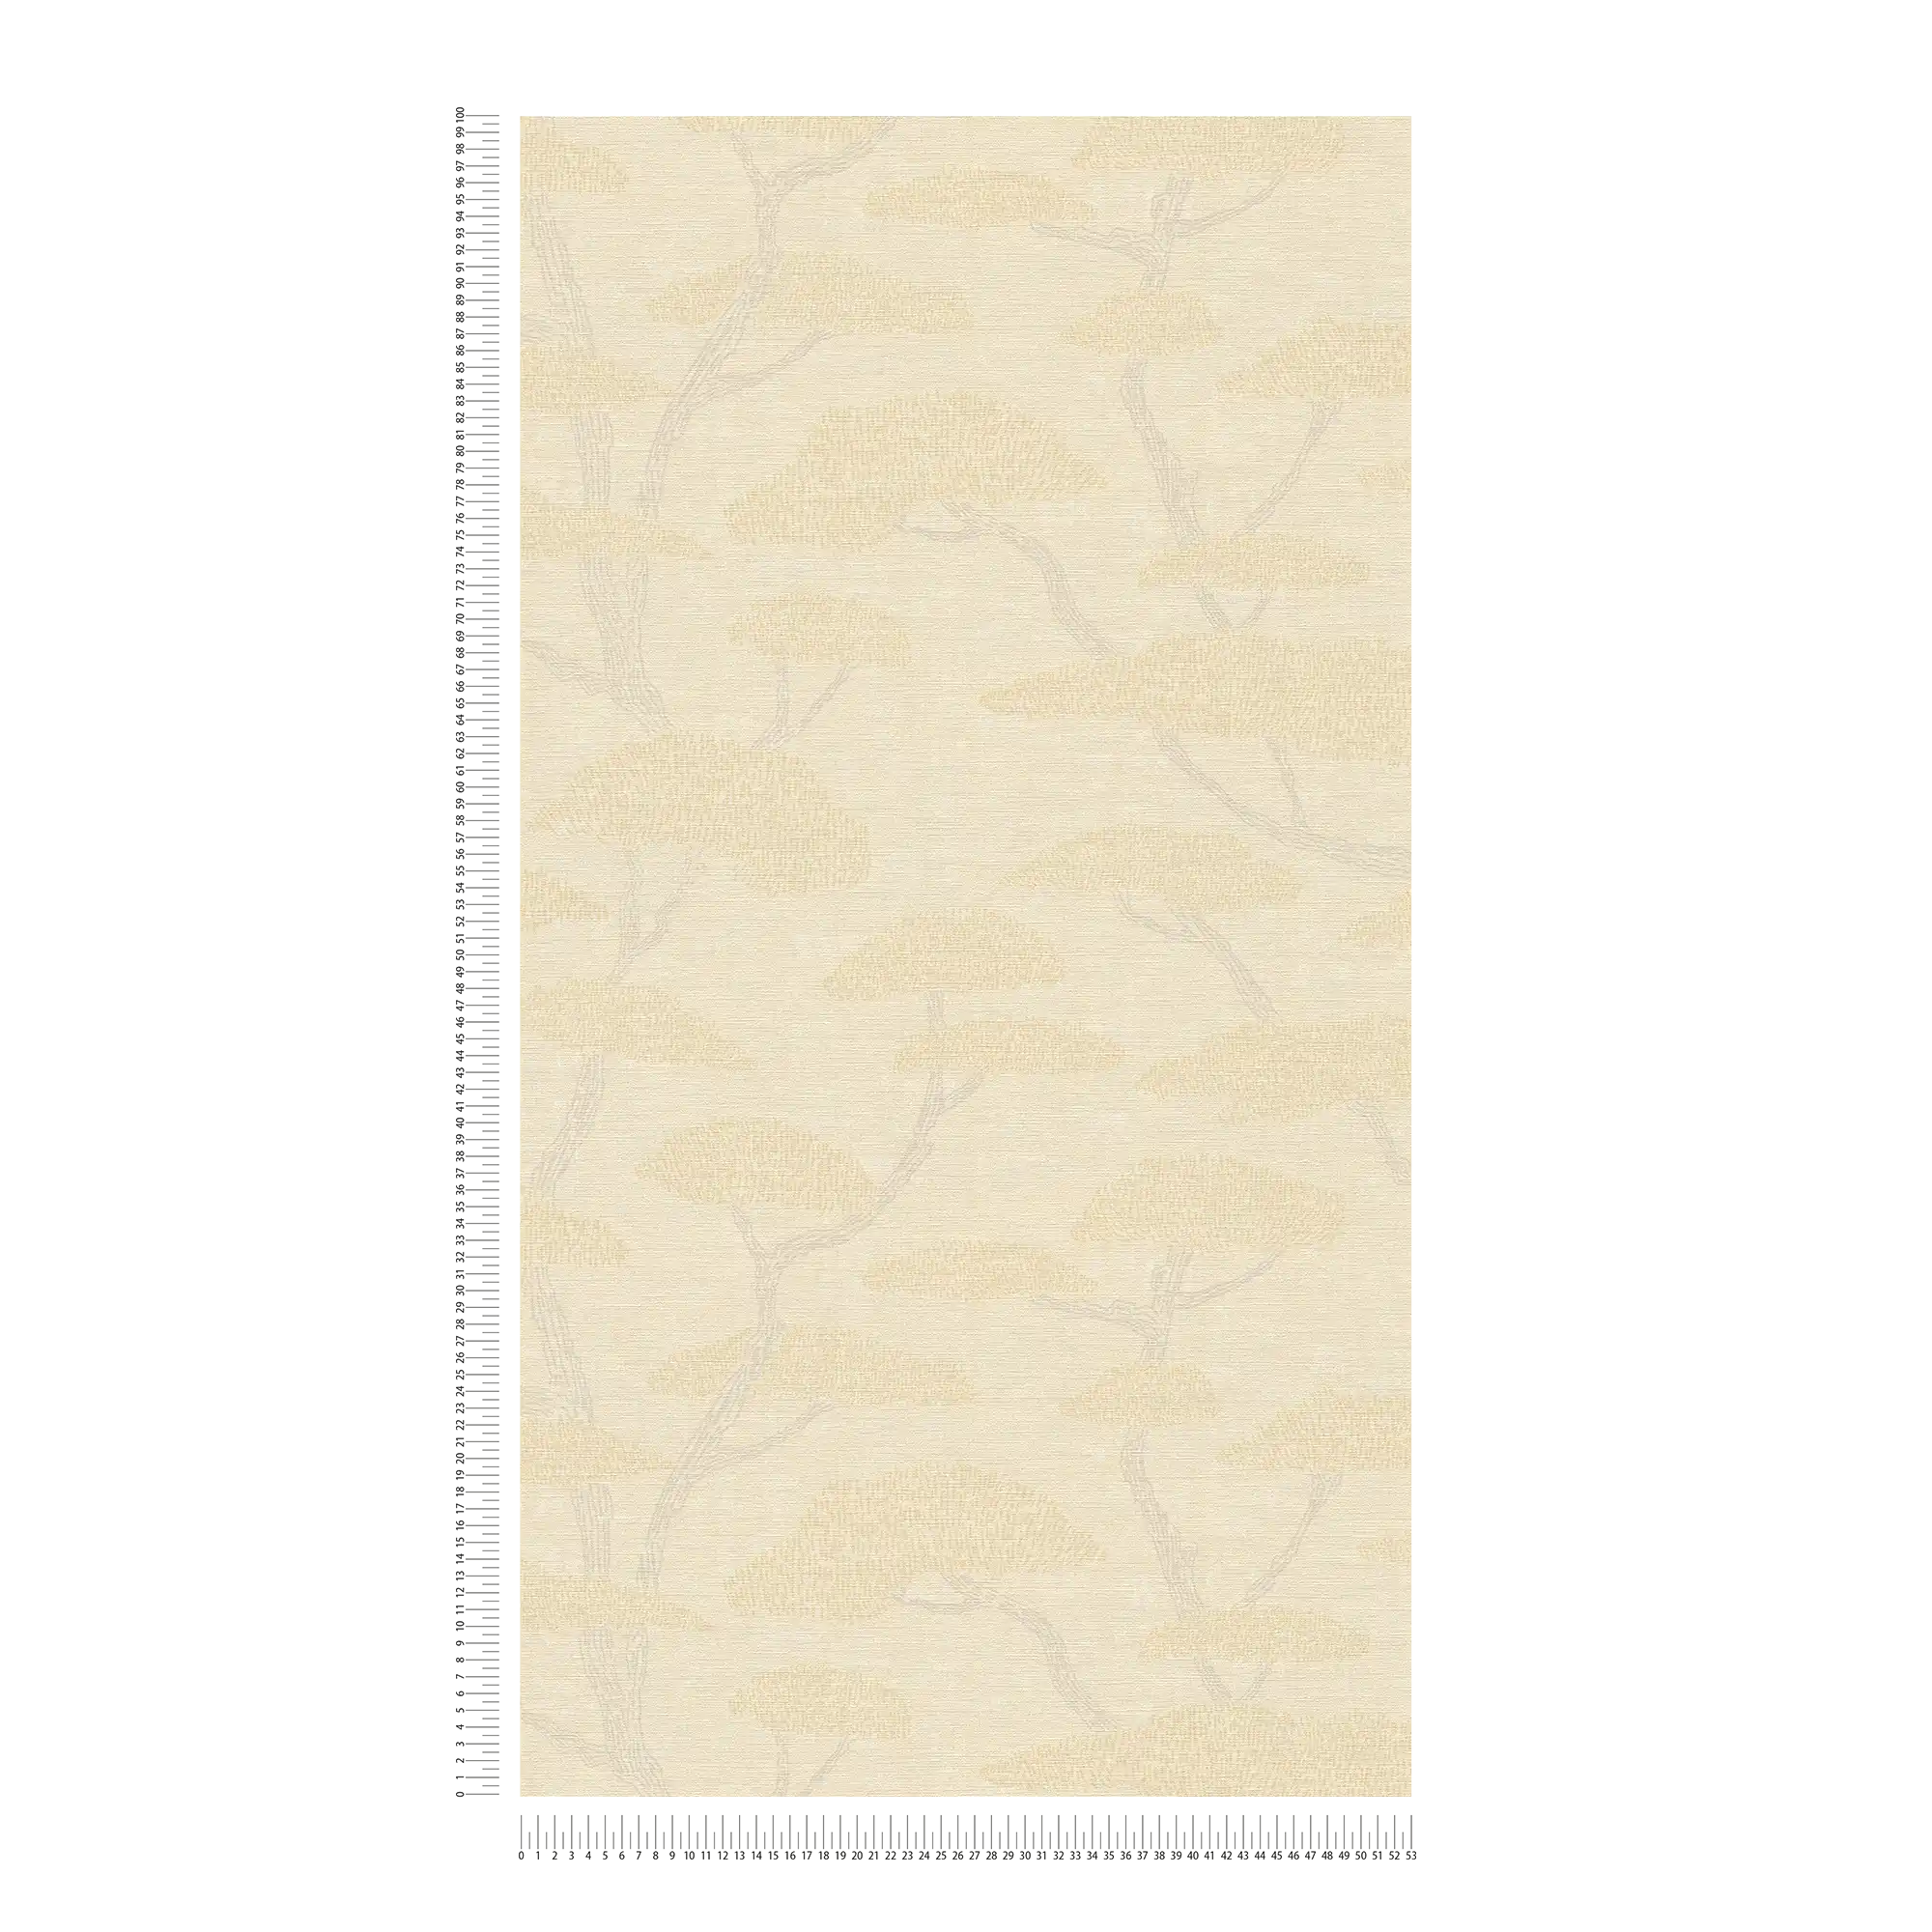             Papel pintado vintage diseño árbol pinos - crema, beige
        